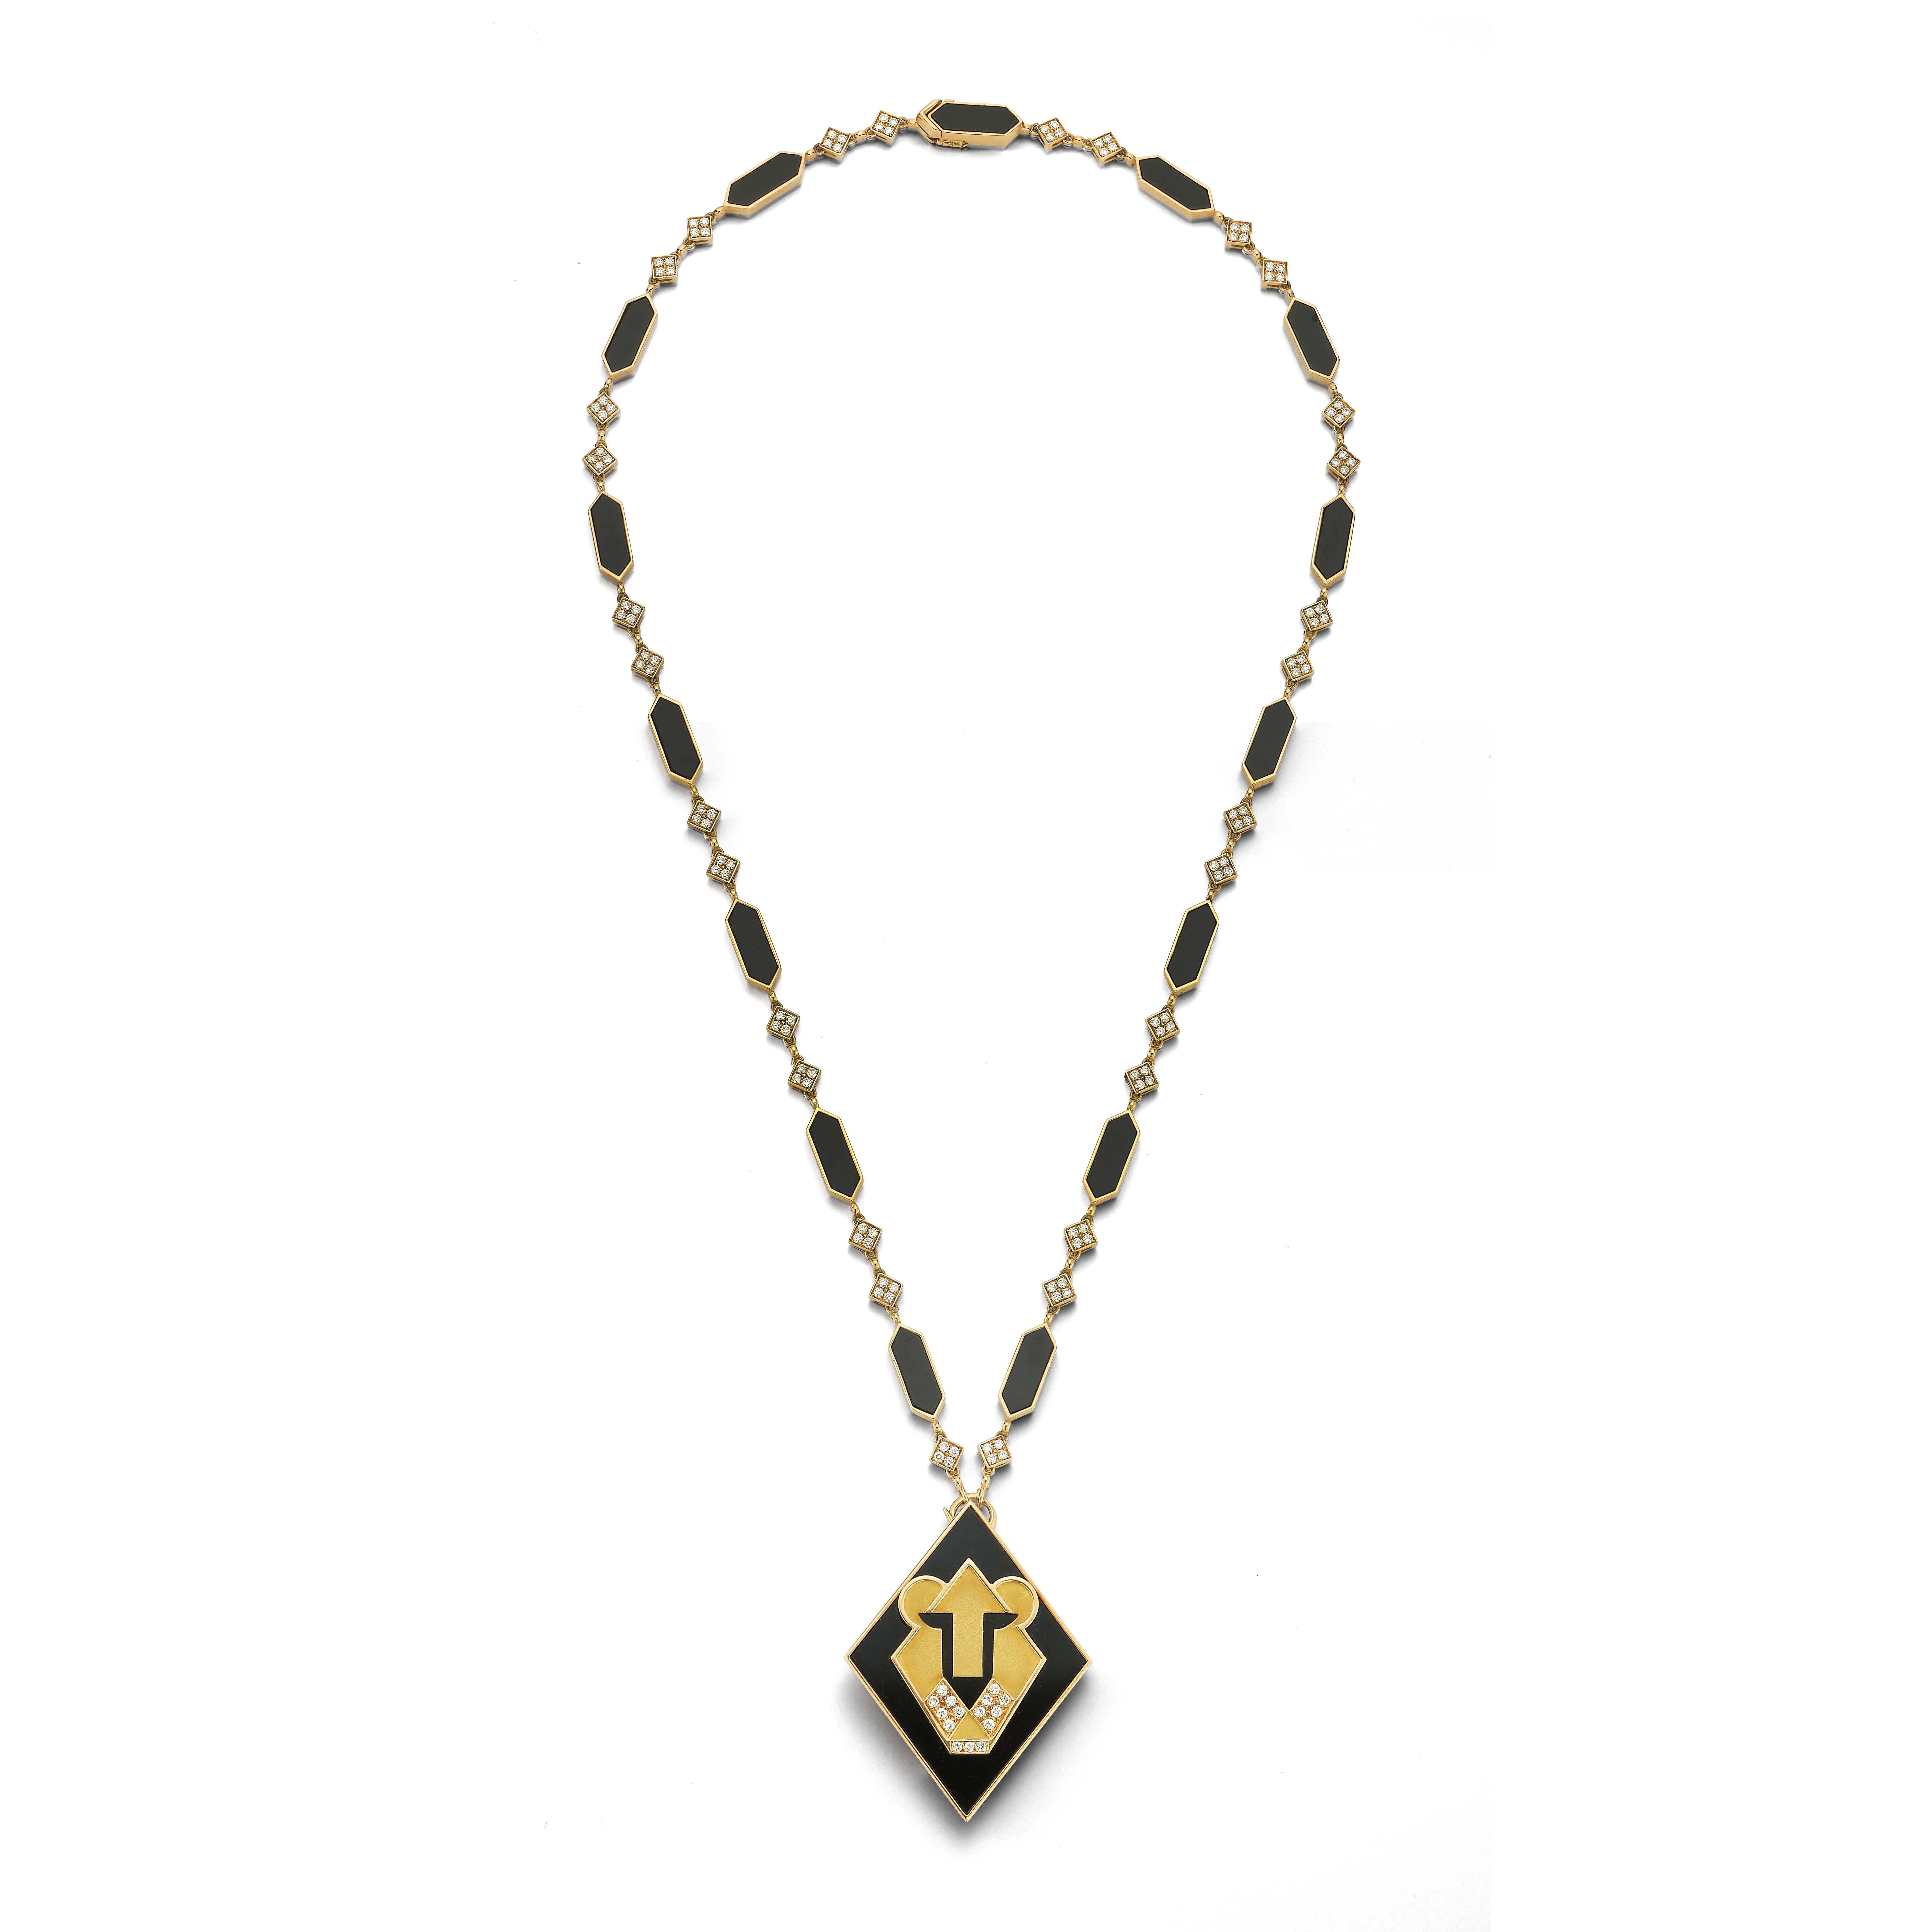 Extrem seltene Bulgari Onyx & Diamant Löwe Halskette 

Ein goldener Anhänger, besetzt mit Onyx und 15 runden Diamanten in Form eines Löwen, mit einer goldenen Kette aus Onyx und weiteren 120 runden Diamanten

Kettenlänge: 24